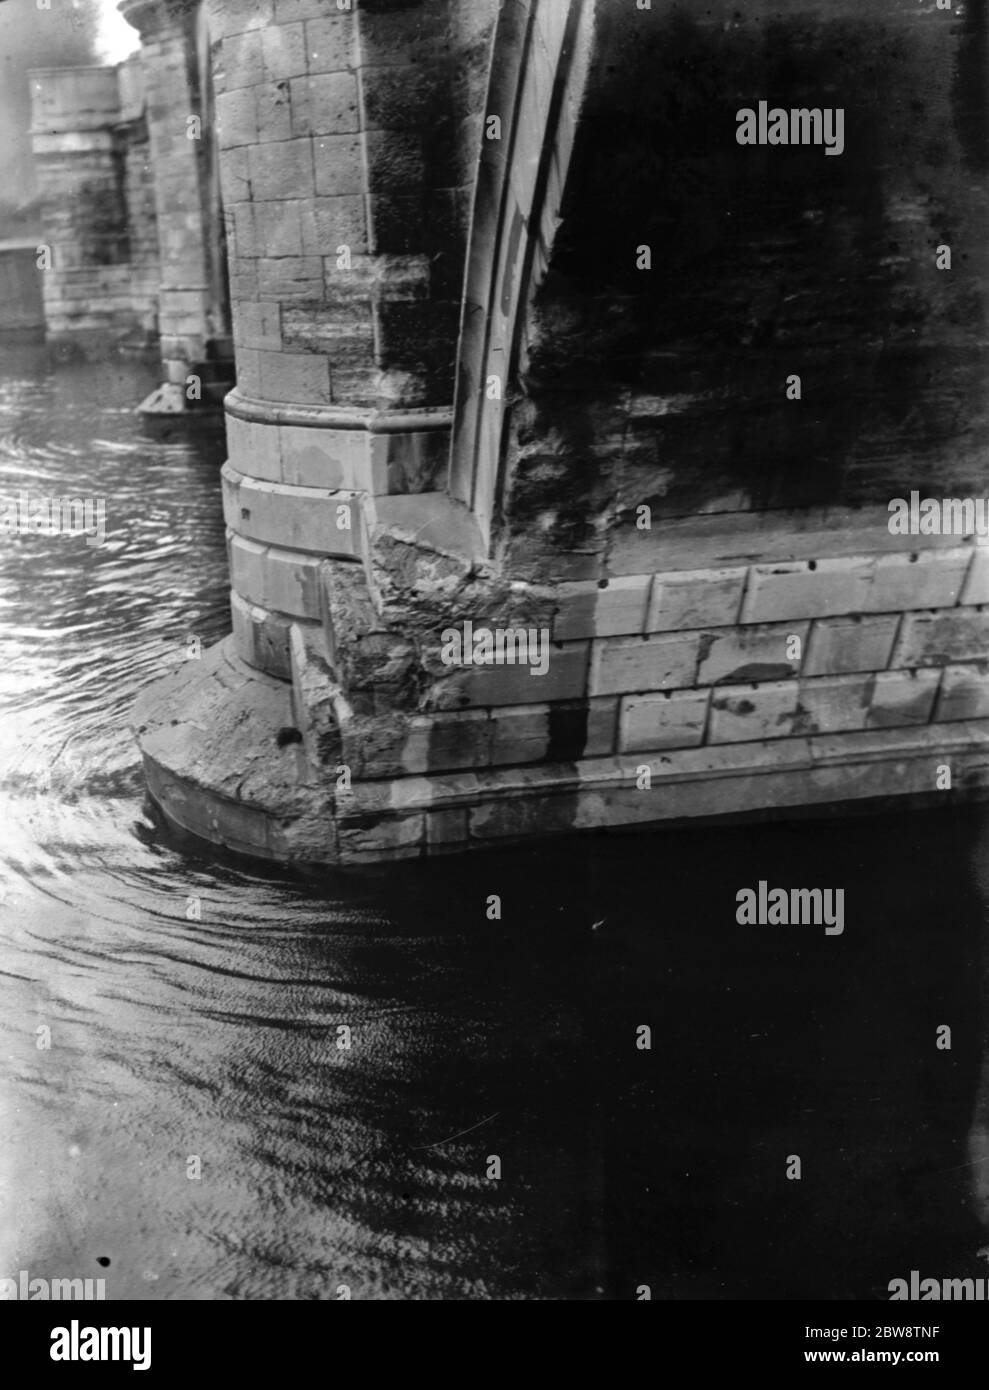 Association of Master Lightermen und Barge Besitzer haben einen Anträge für die Reparatur von Richmond Bridge an der Themse in London. Fotos zeigen die beschädigten Fundamentpiers der Richmond Bridge. 26. Oktober 1936 Stockfoto